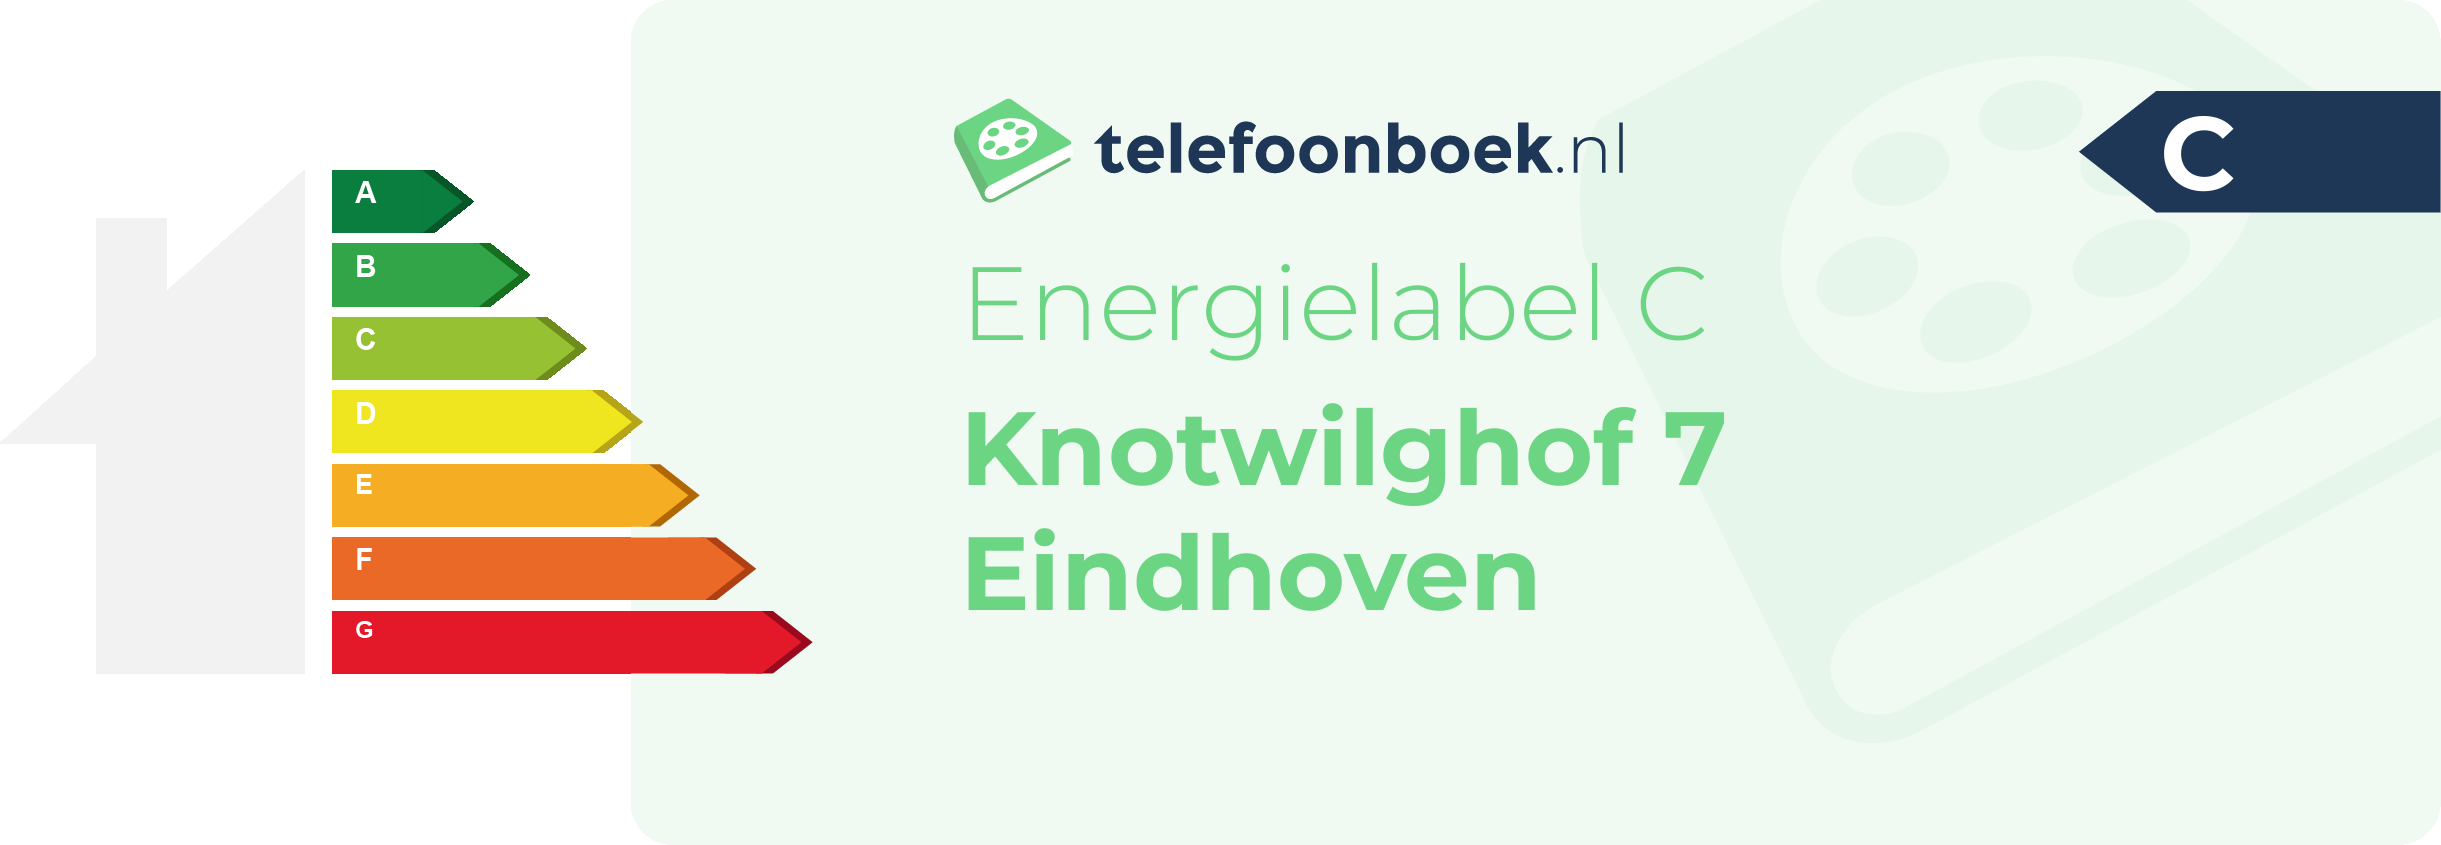 Energielabel Knotwilghof 7 Eindhoven